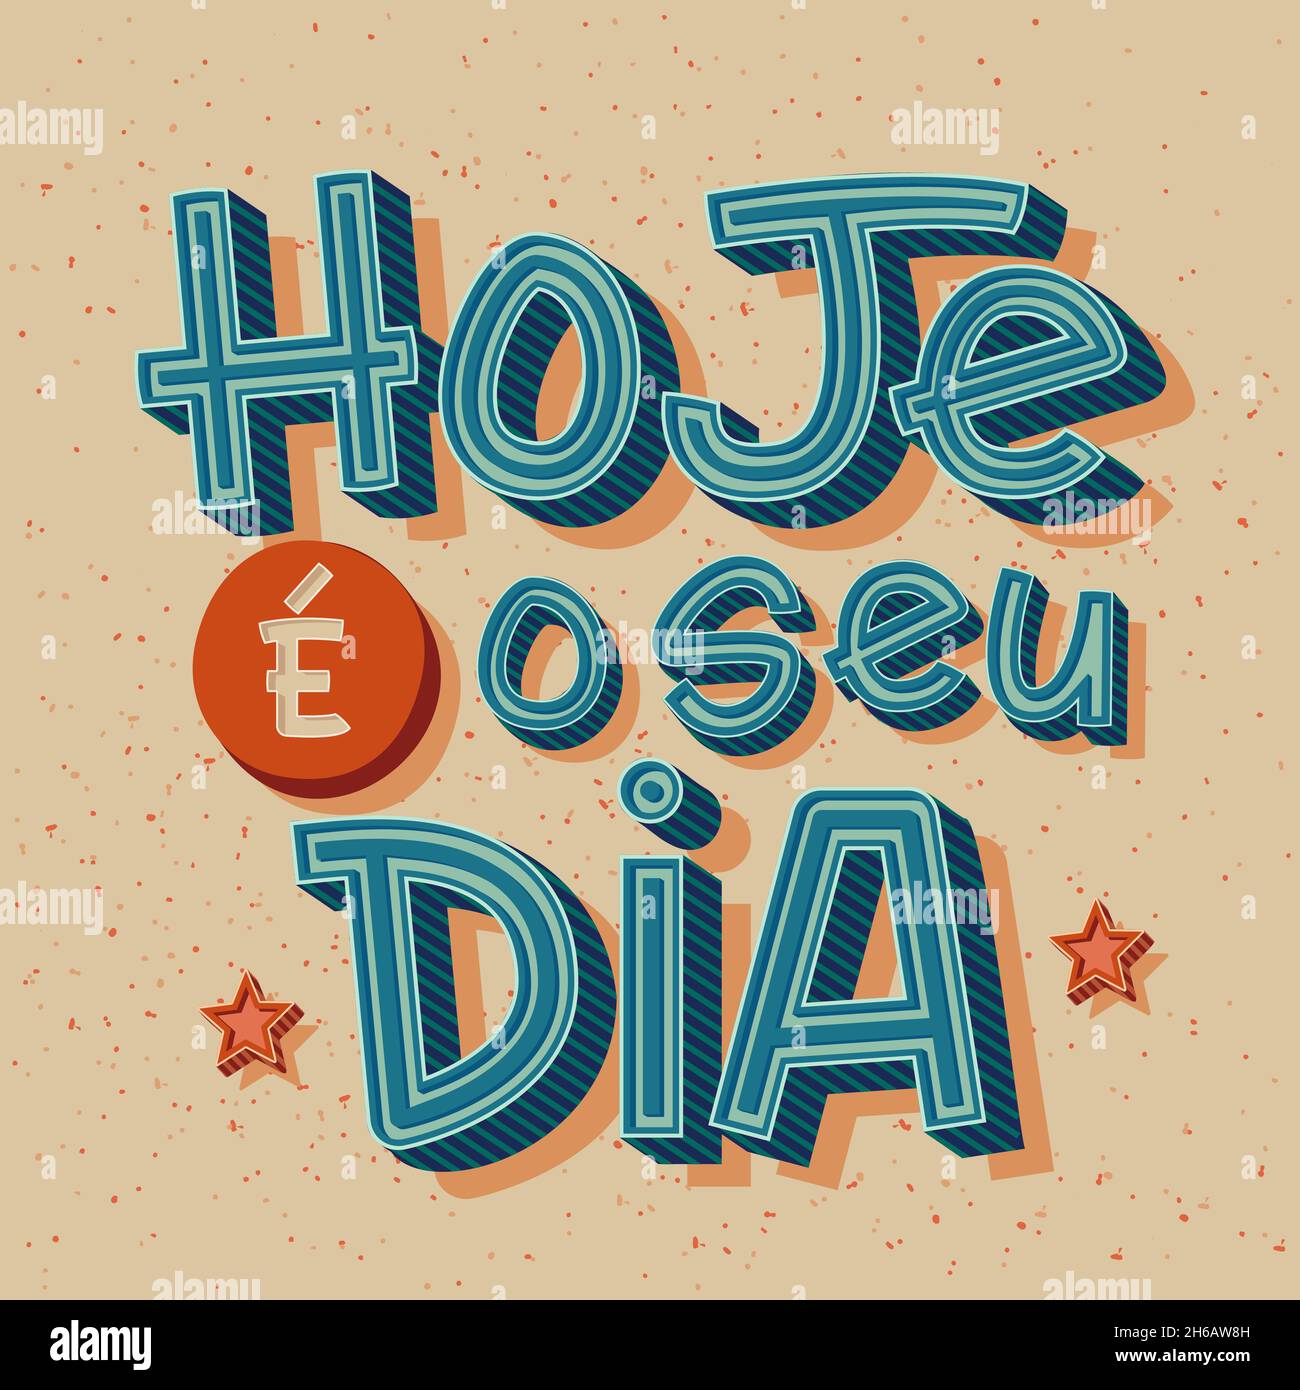 Affiche ancienne colorée en portugais brésilien.Traduction : « aujourd'hui, c'est votre journée » Illustration de Vecteur